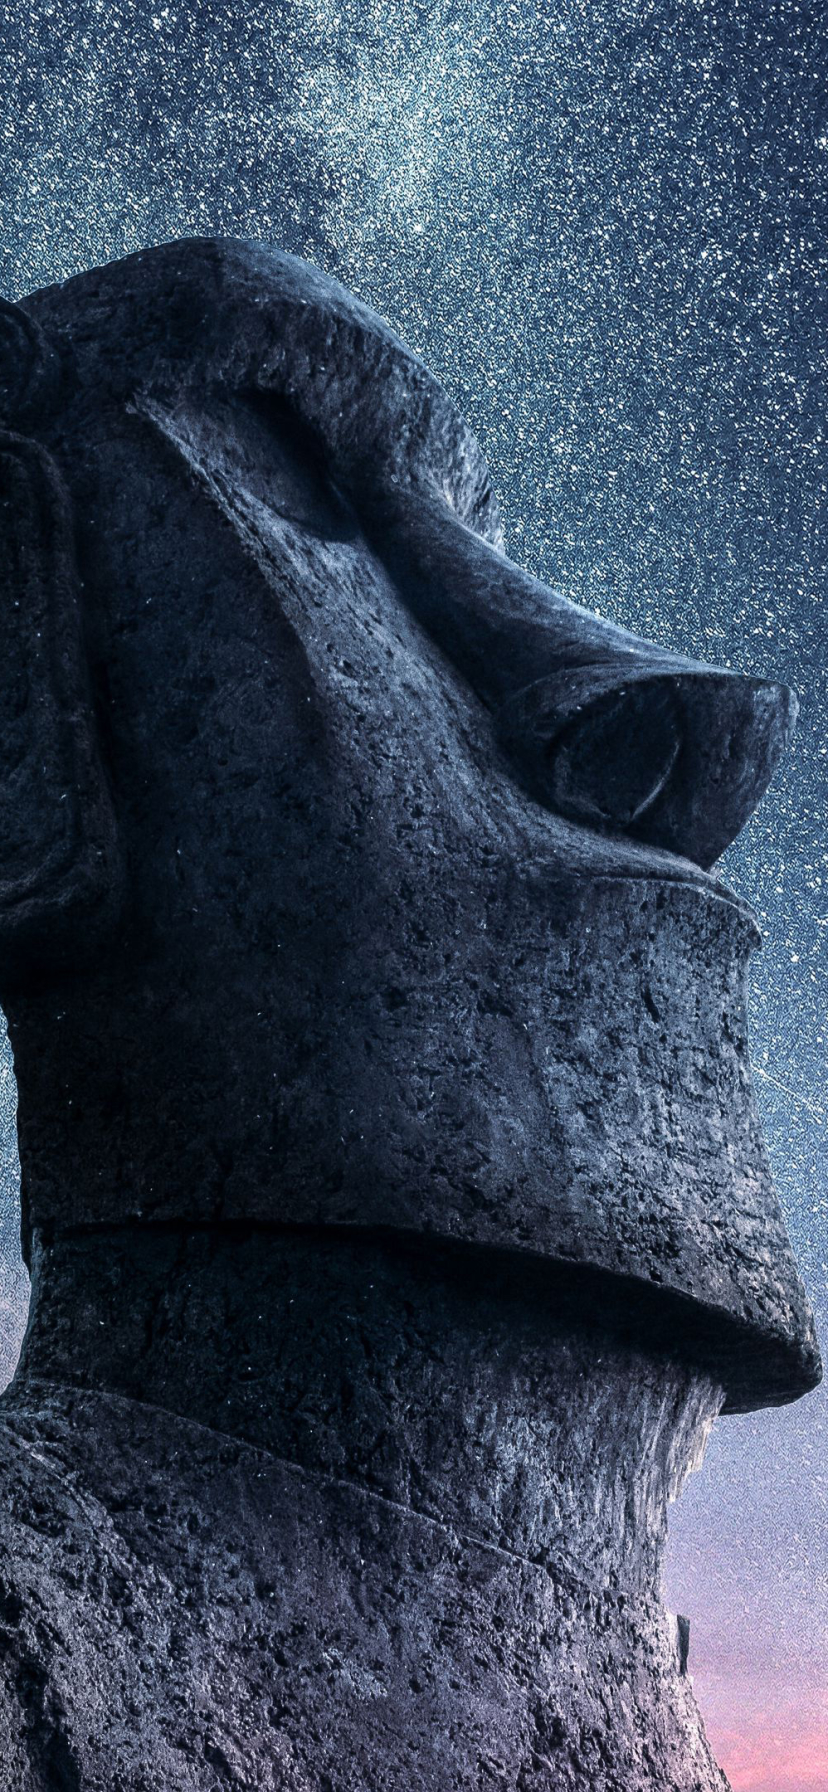 man made, moai, easter island, moai statues